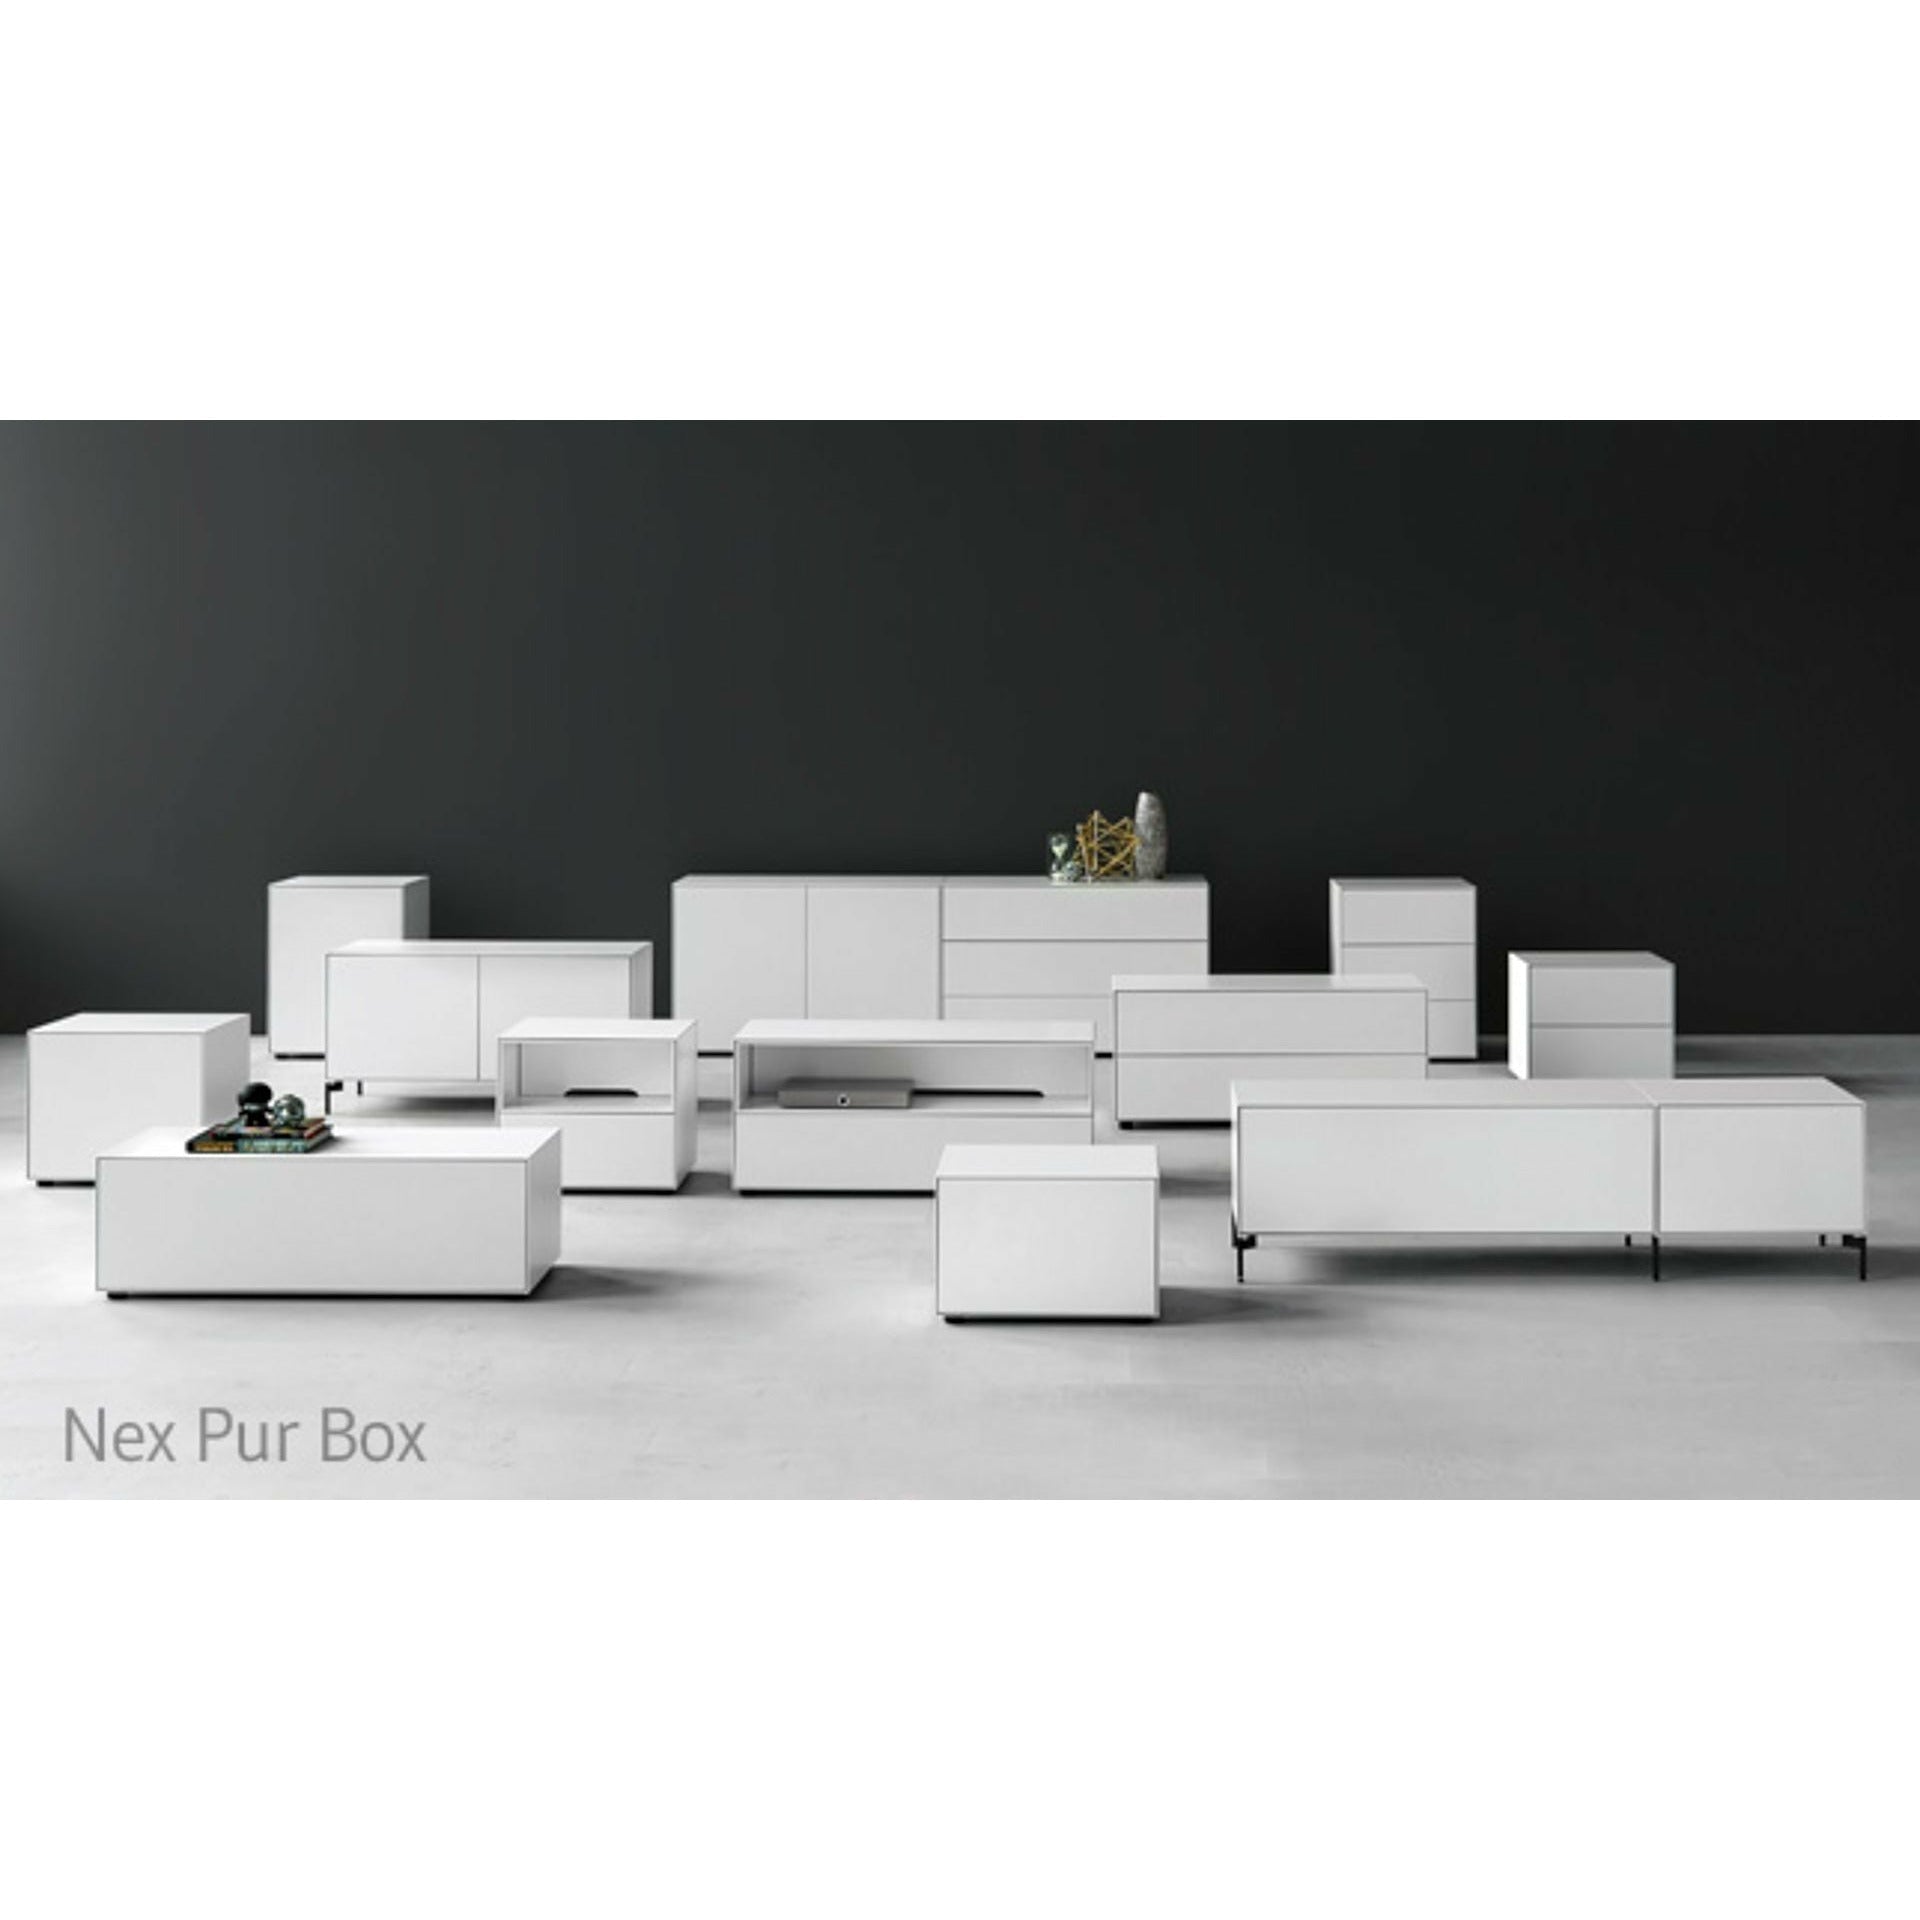 Piure Nex Pur Box Drawer/Door HxB 50x180 Cm, 2 Skuffer/1 Hylde